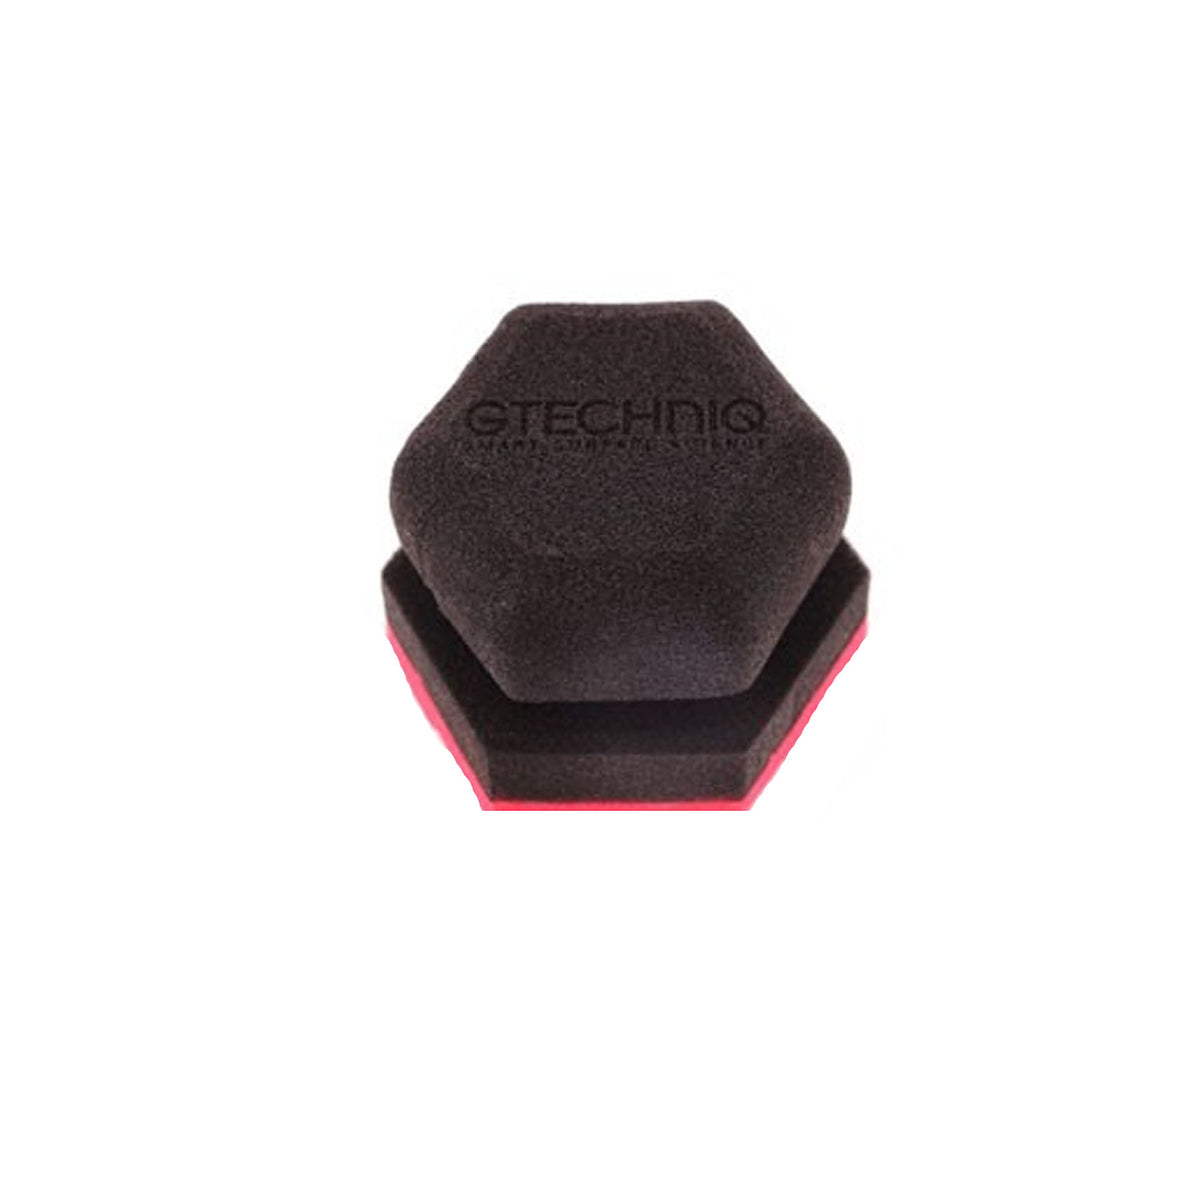 Gtechniq AP3 Dual Layered Soft Foam Applicator